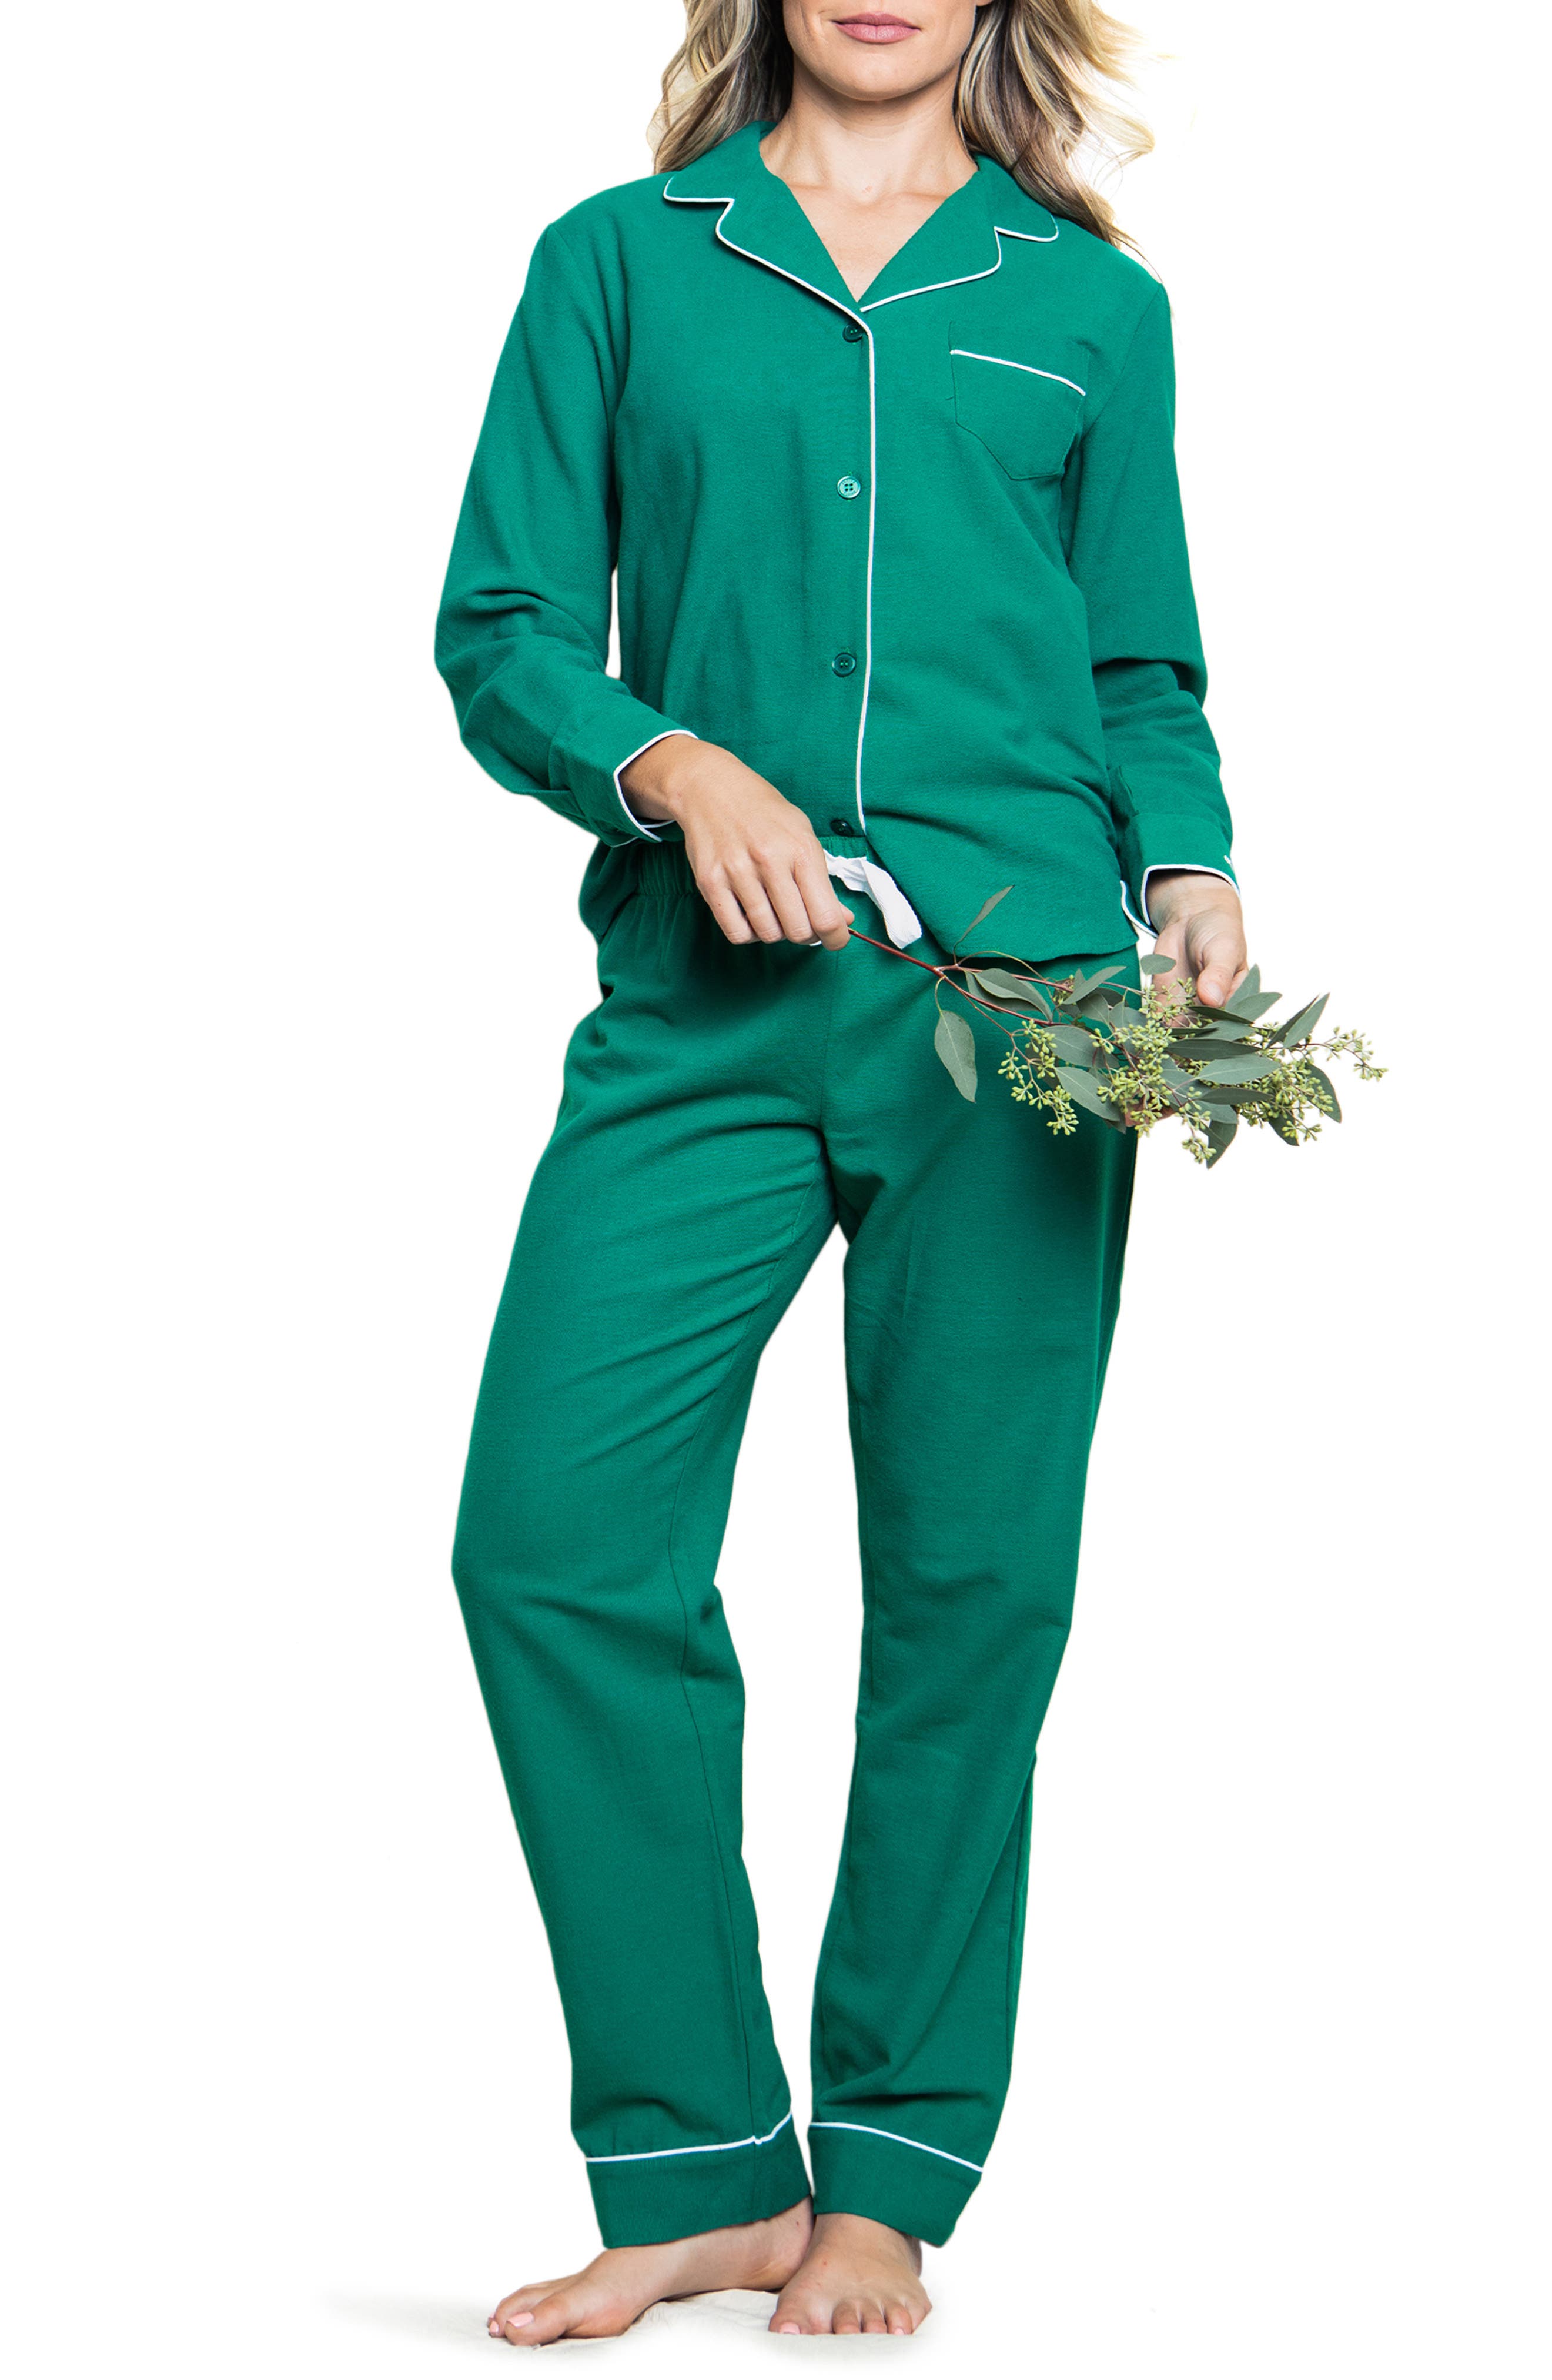 Atilou Cheri cotton pyjamas Green Farfetch Clothing Loungewear Pajamas 